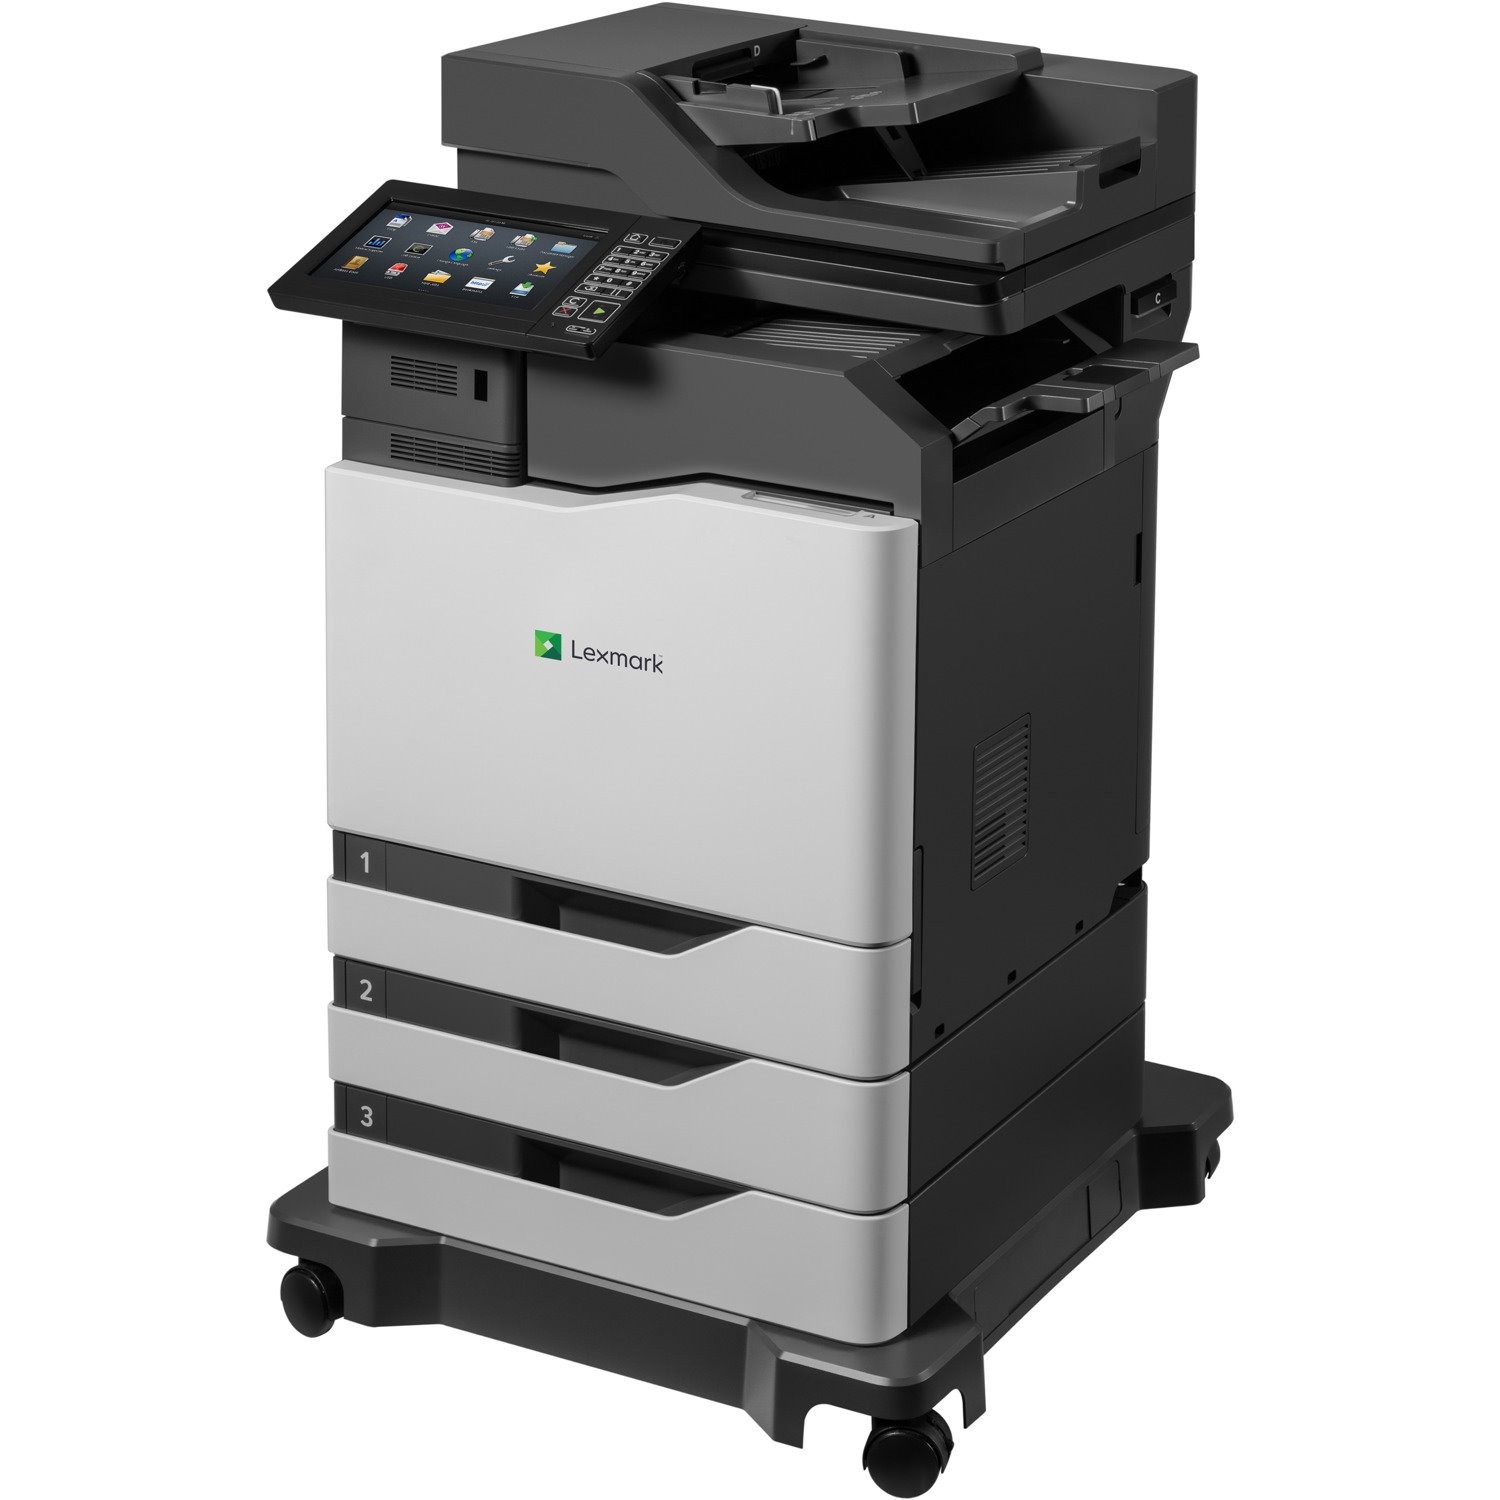 Lexmark CX860dtfe Laser Multifunction Printer - Color